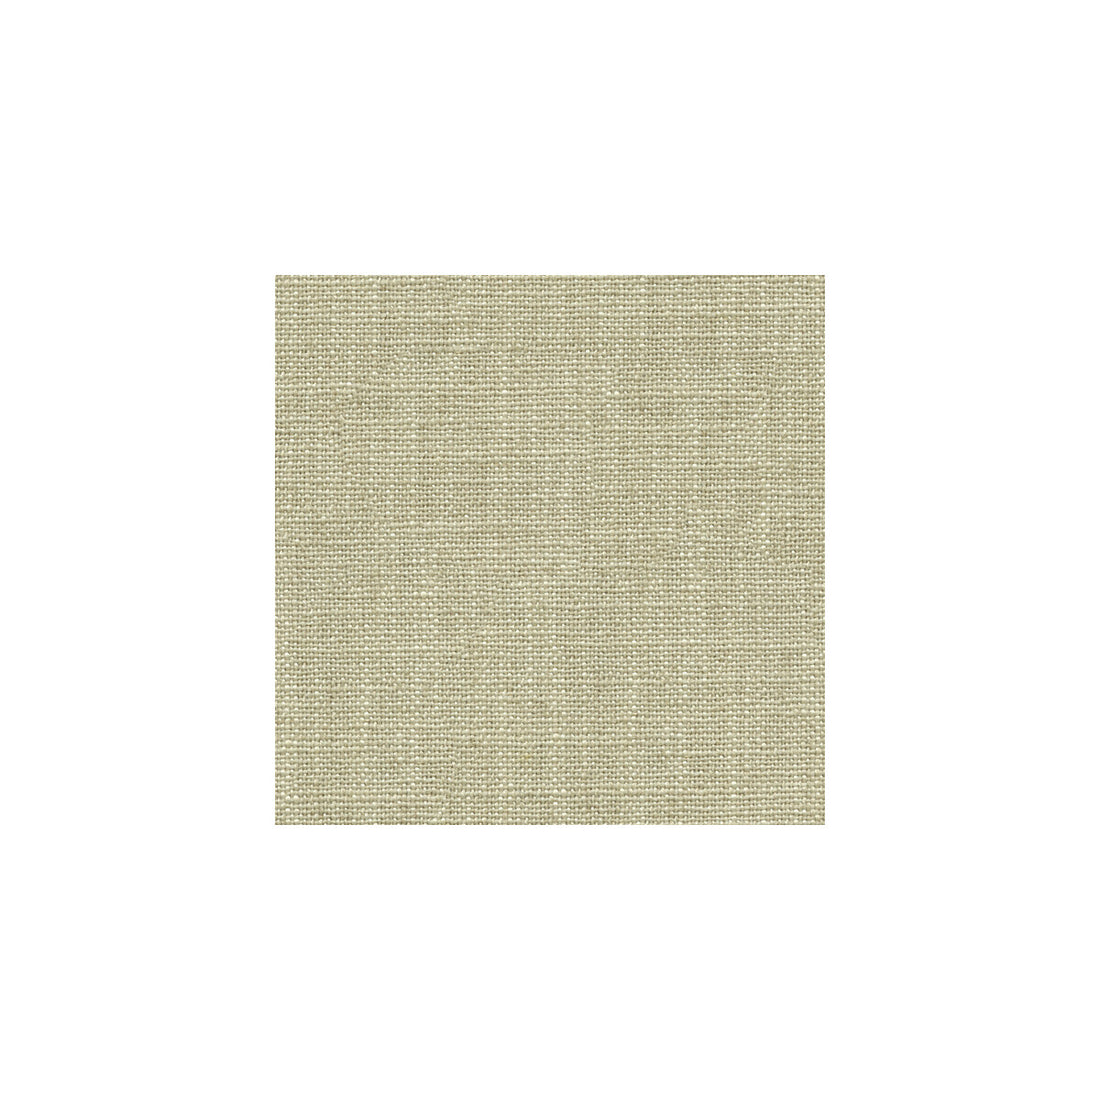 Kravet Basics fabric in 33008-16 color - pattern 33008.16.0 - by Kravet Basics